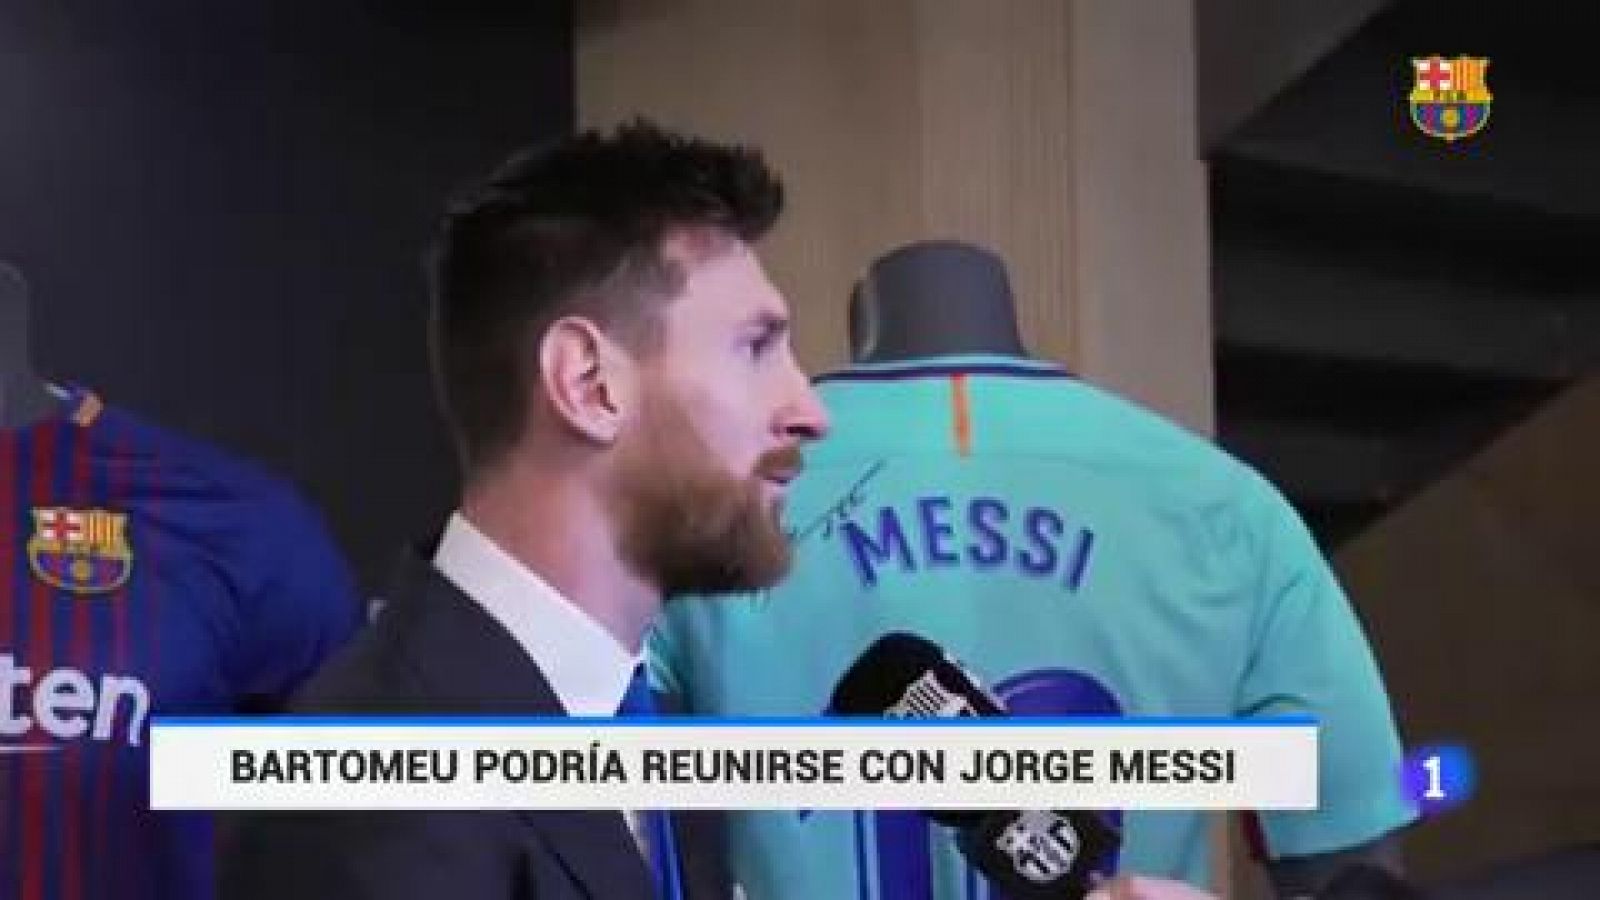 Vídeo: Bartomeu podría reunirse con Jorge Messi - RTVE.es